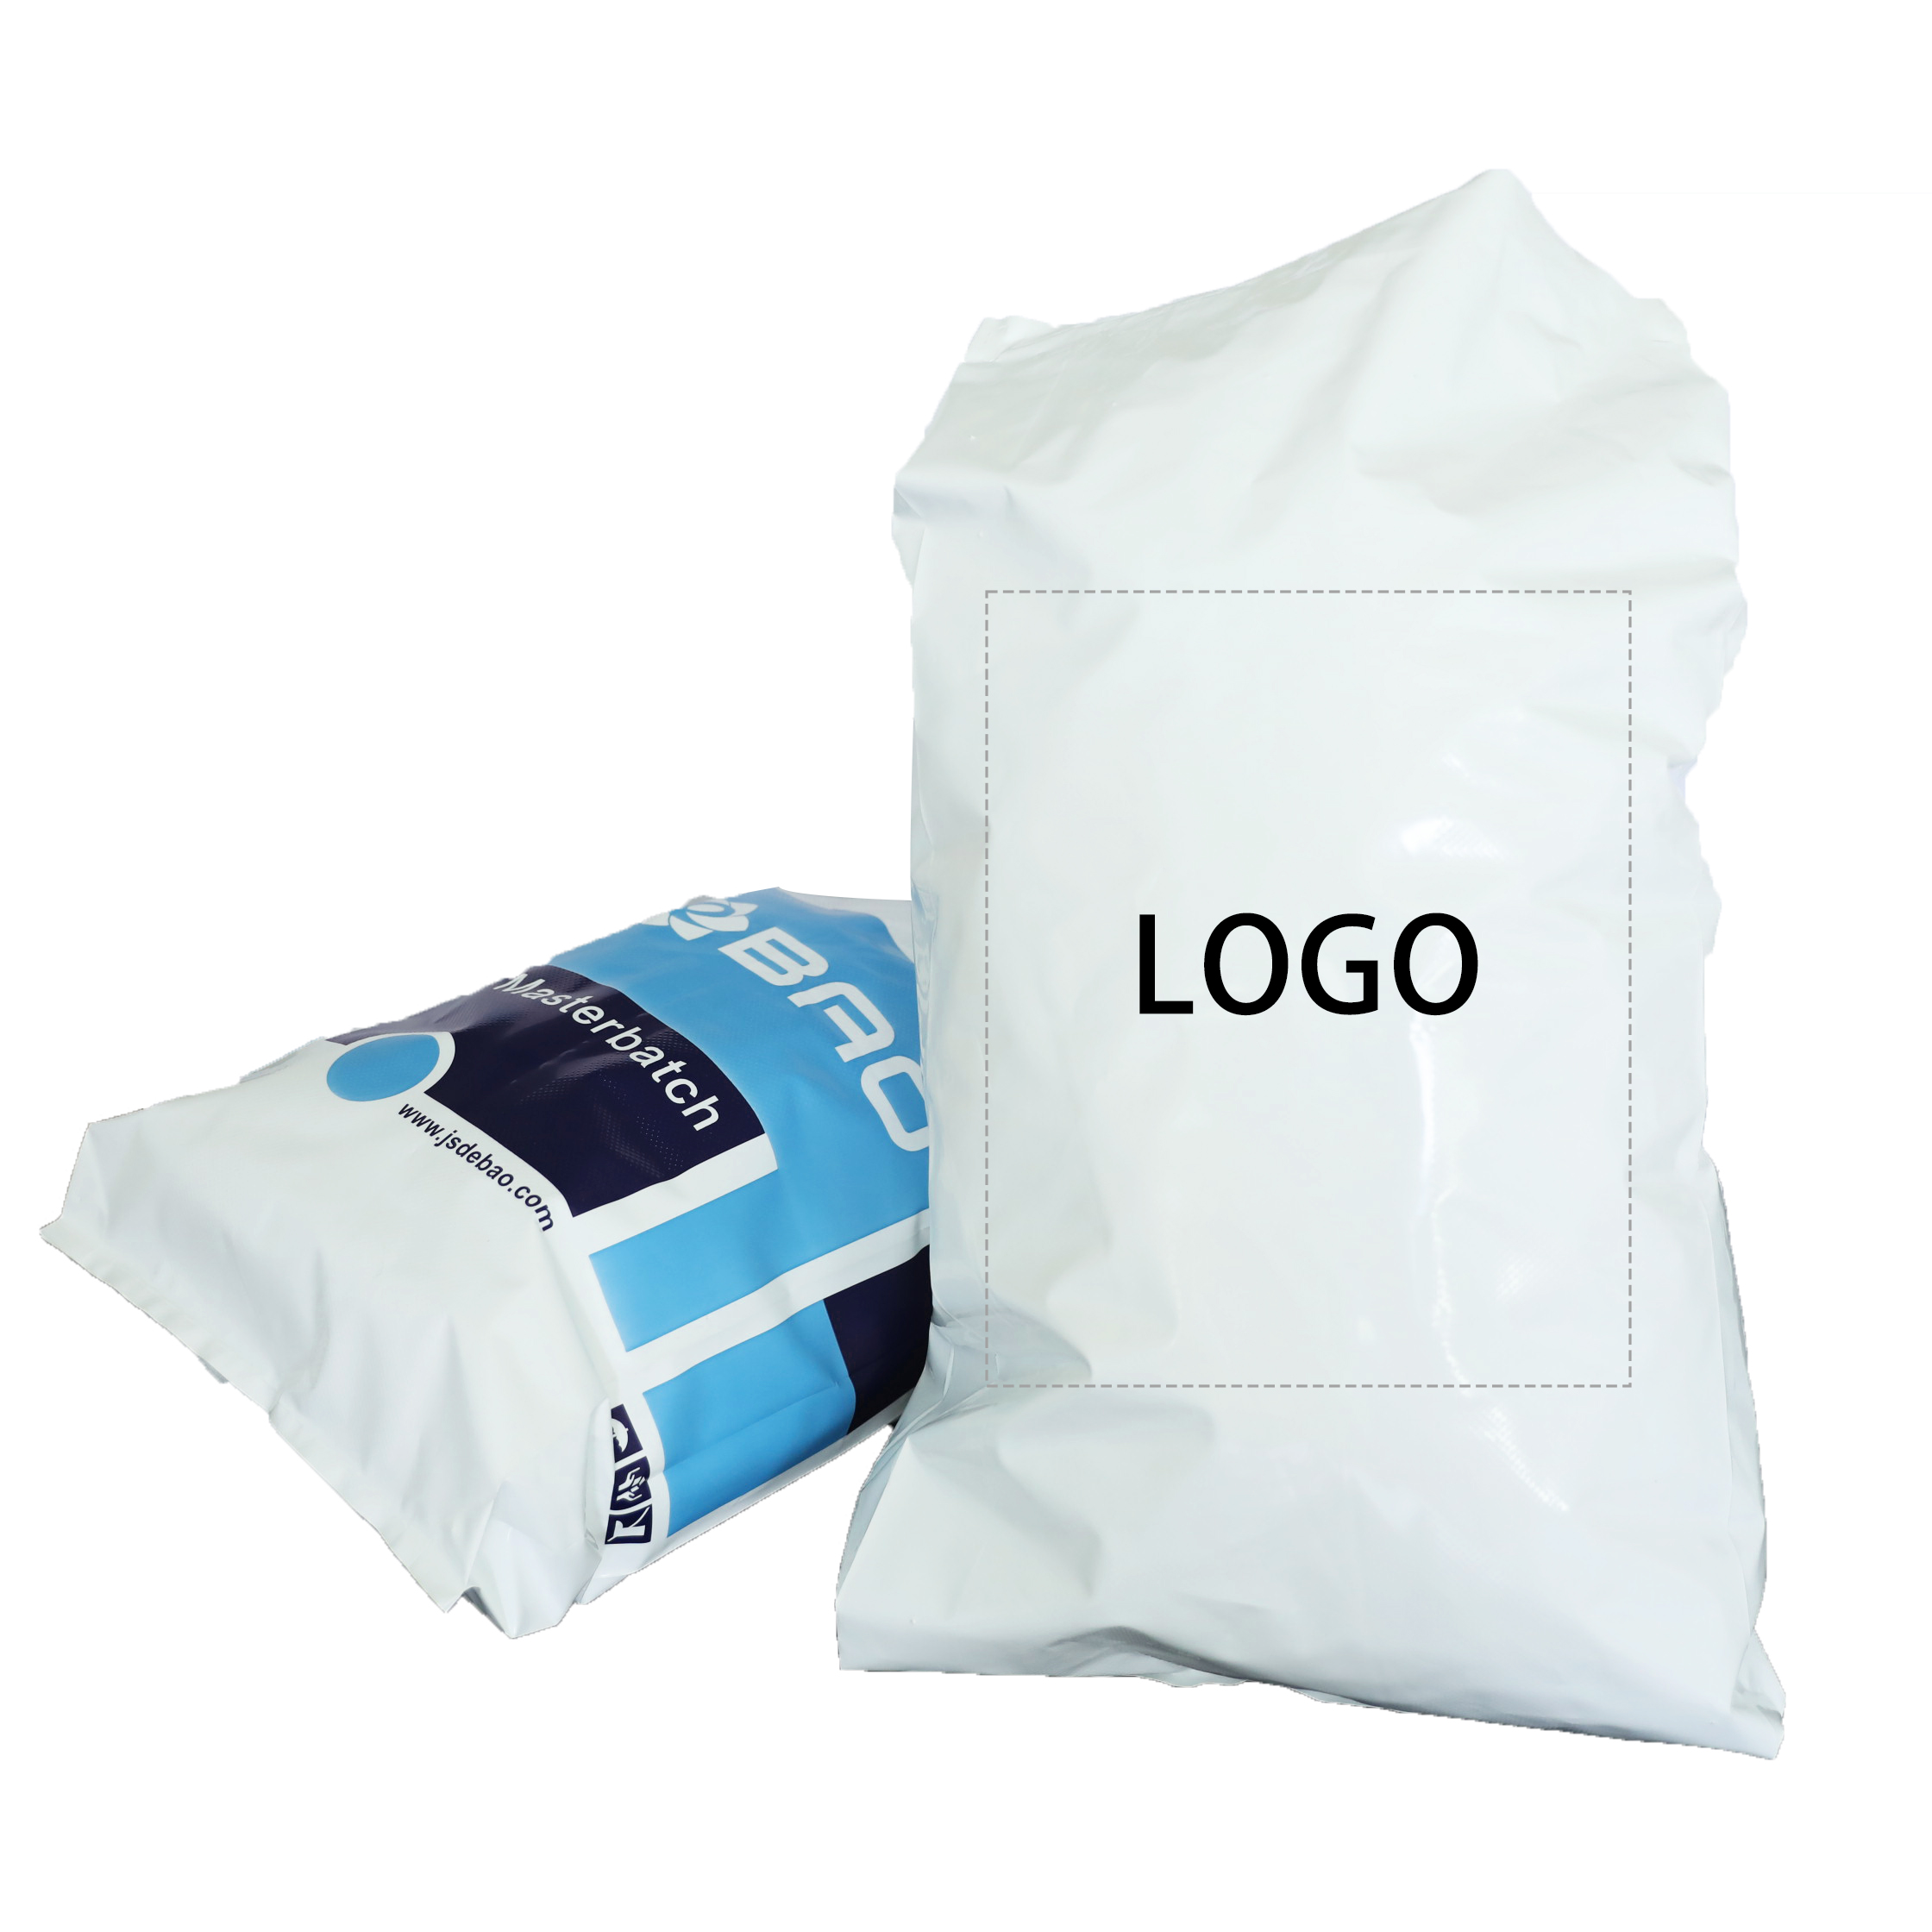 Durevole borsa in PE resistente da 20 kg per l'imballaggio